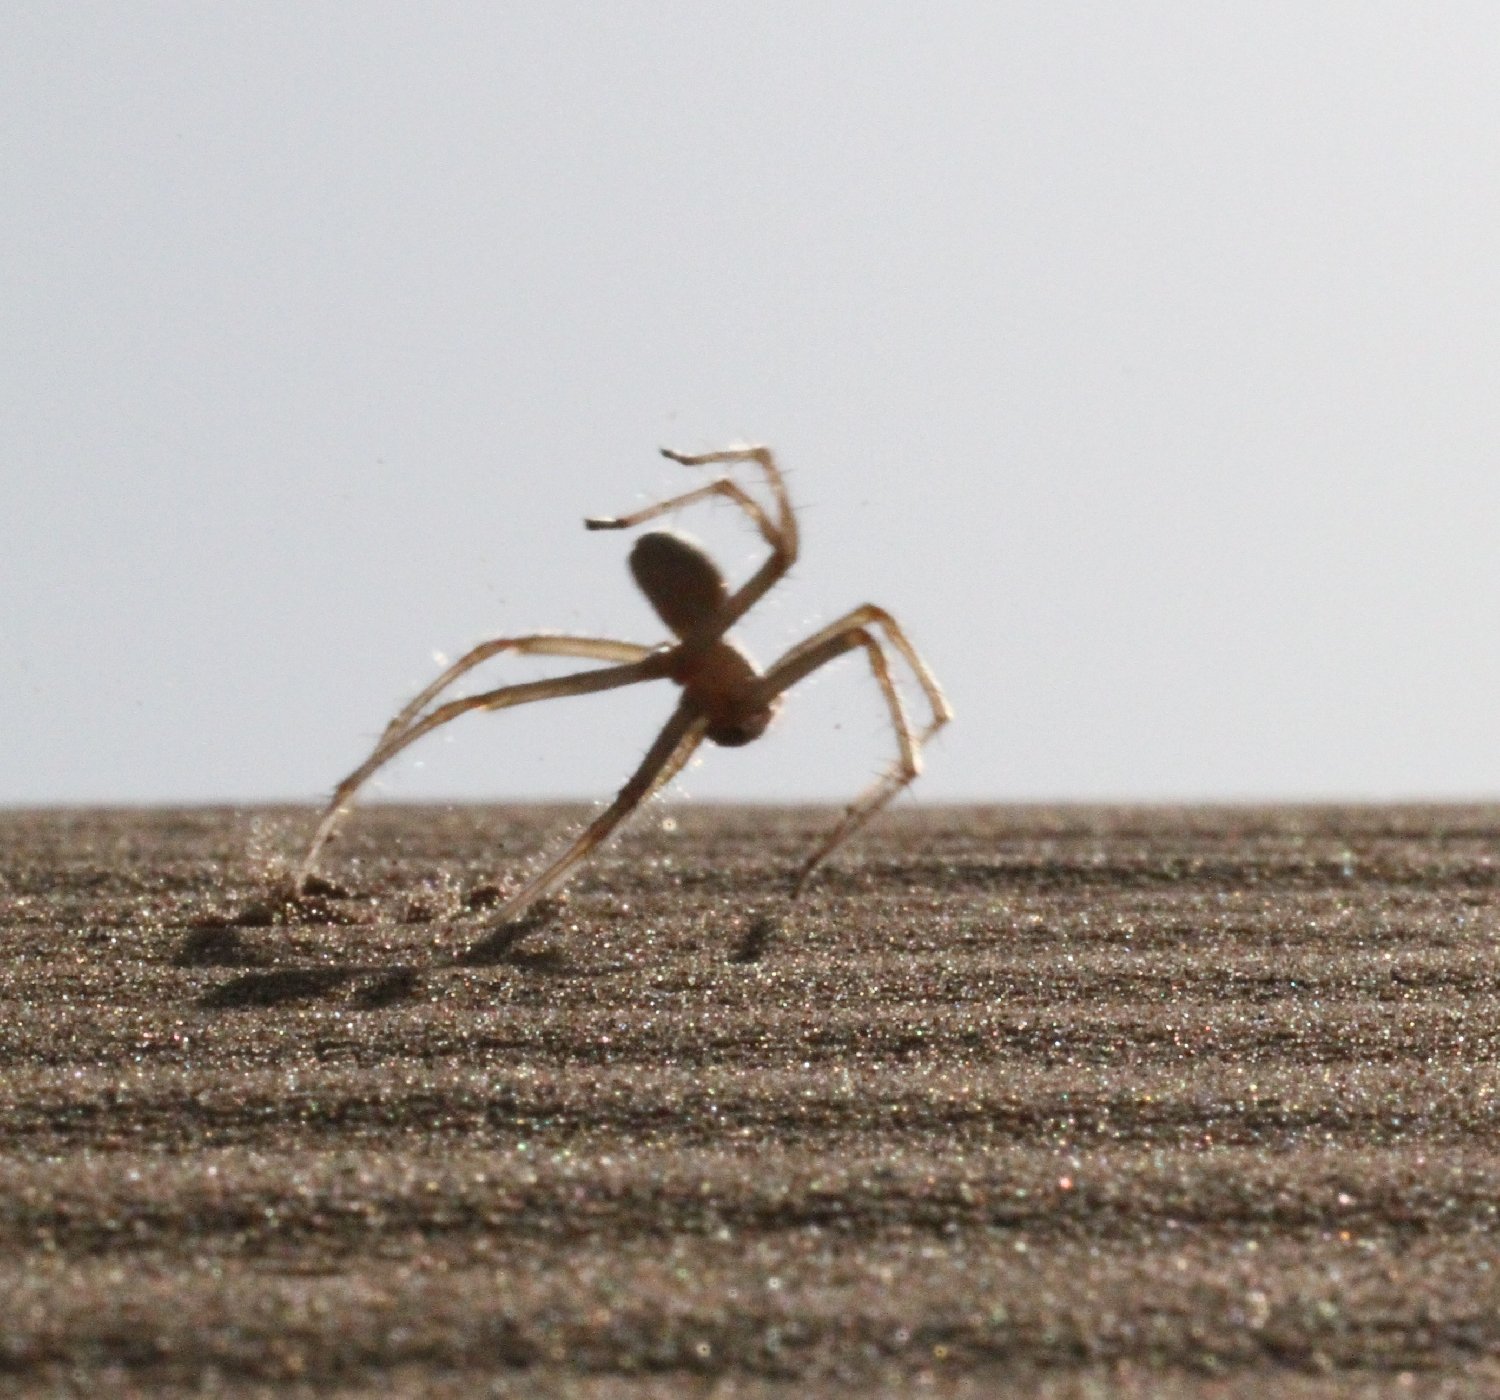 Die Flickflack-Spinne Cebrennus rechenbergi kann sich durch Sprünge deutlich schneller fortbewegen als durch Laufen.